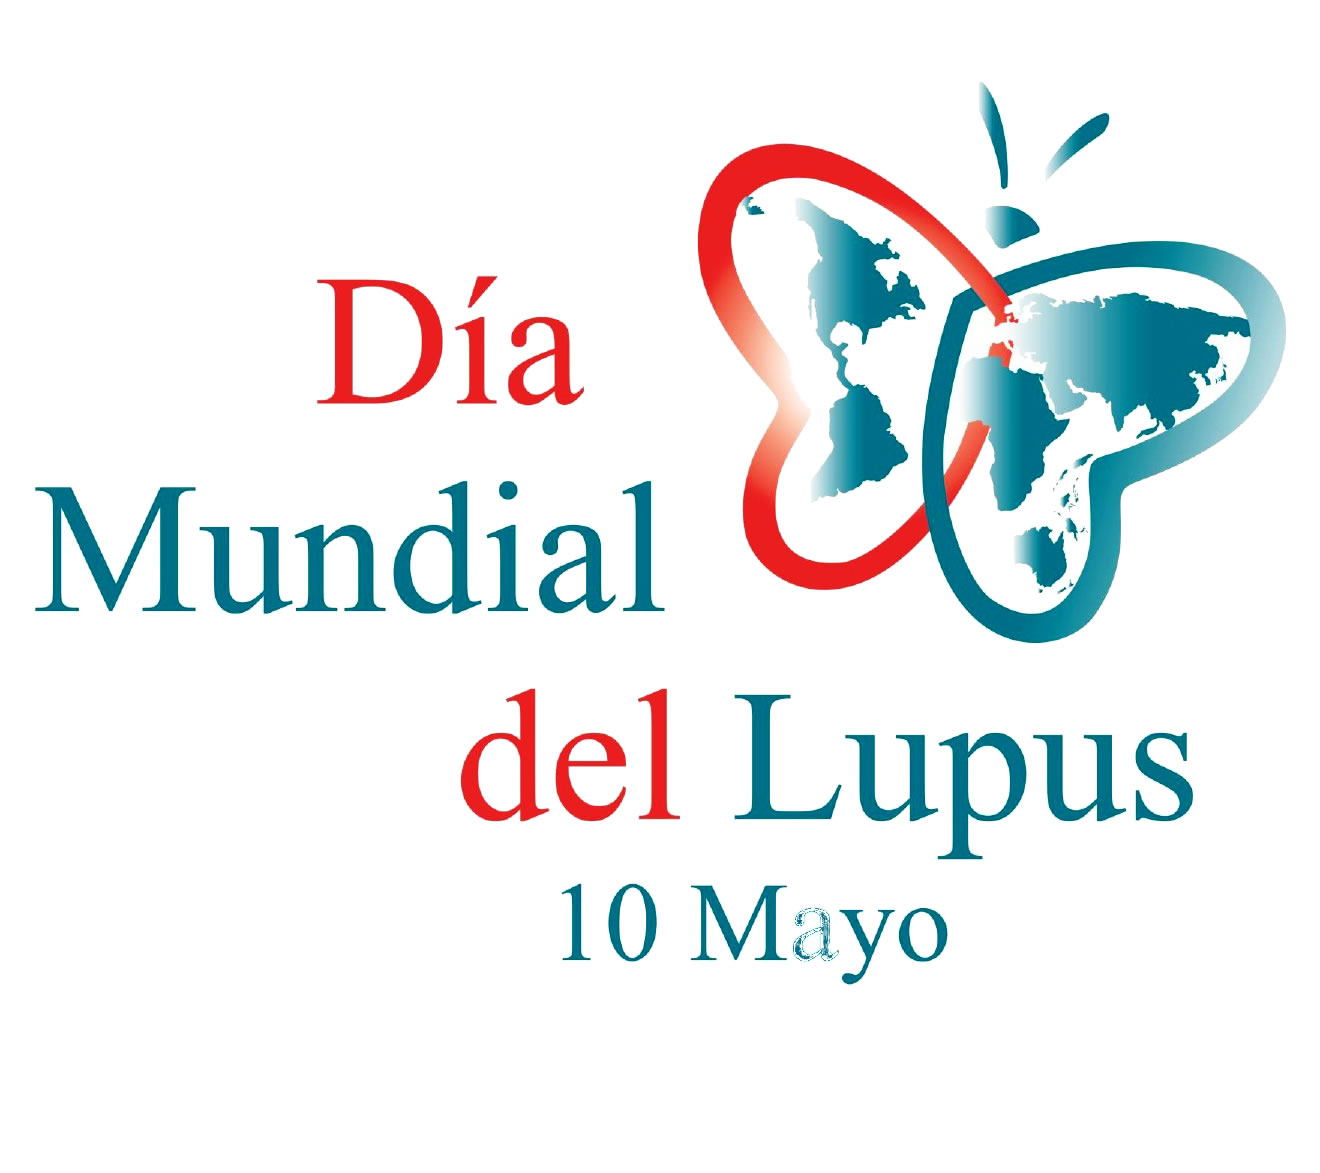 Unas 44 personas son diagnosticadas de lupus cada año en Euskadi